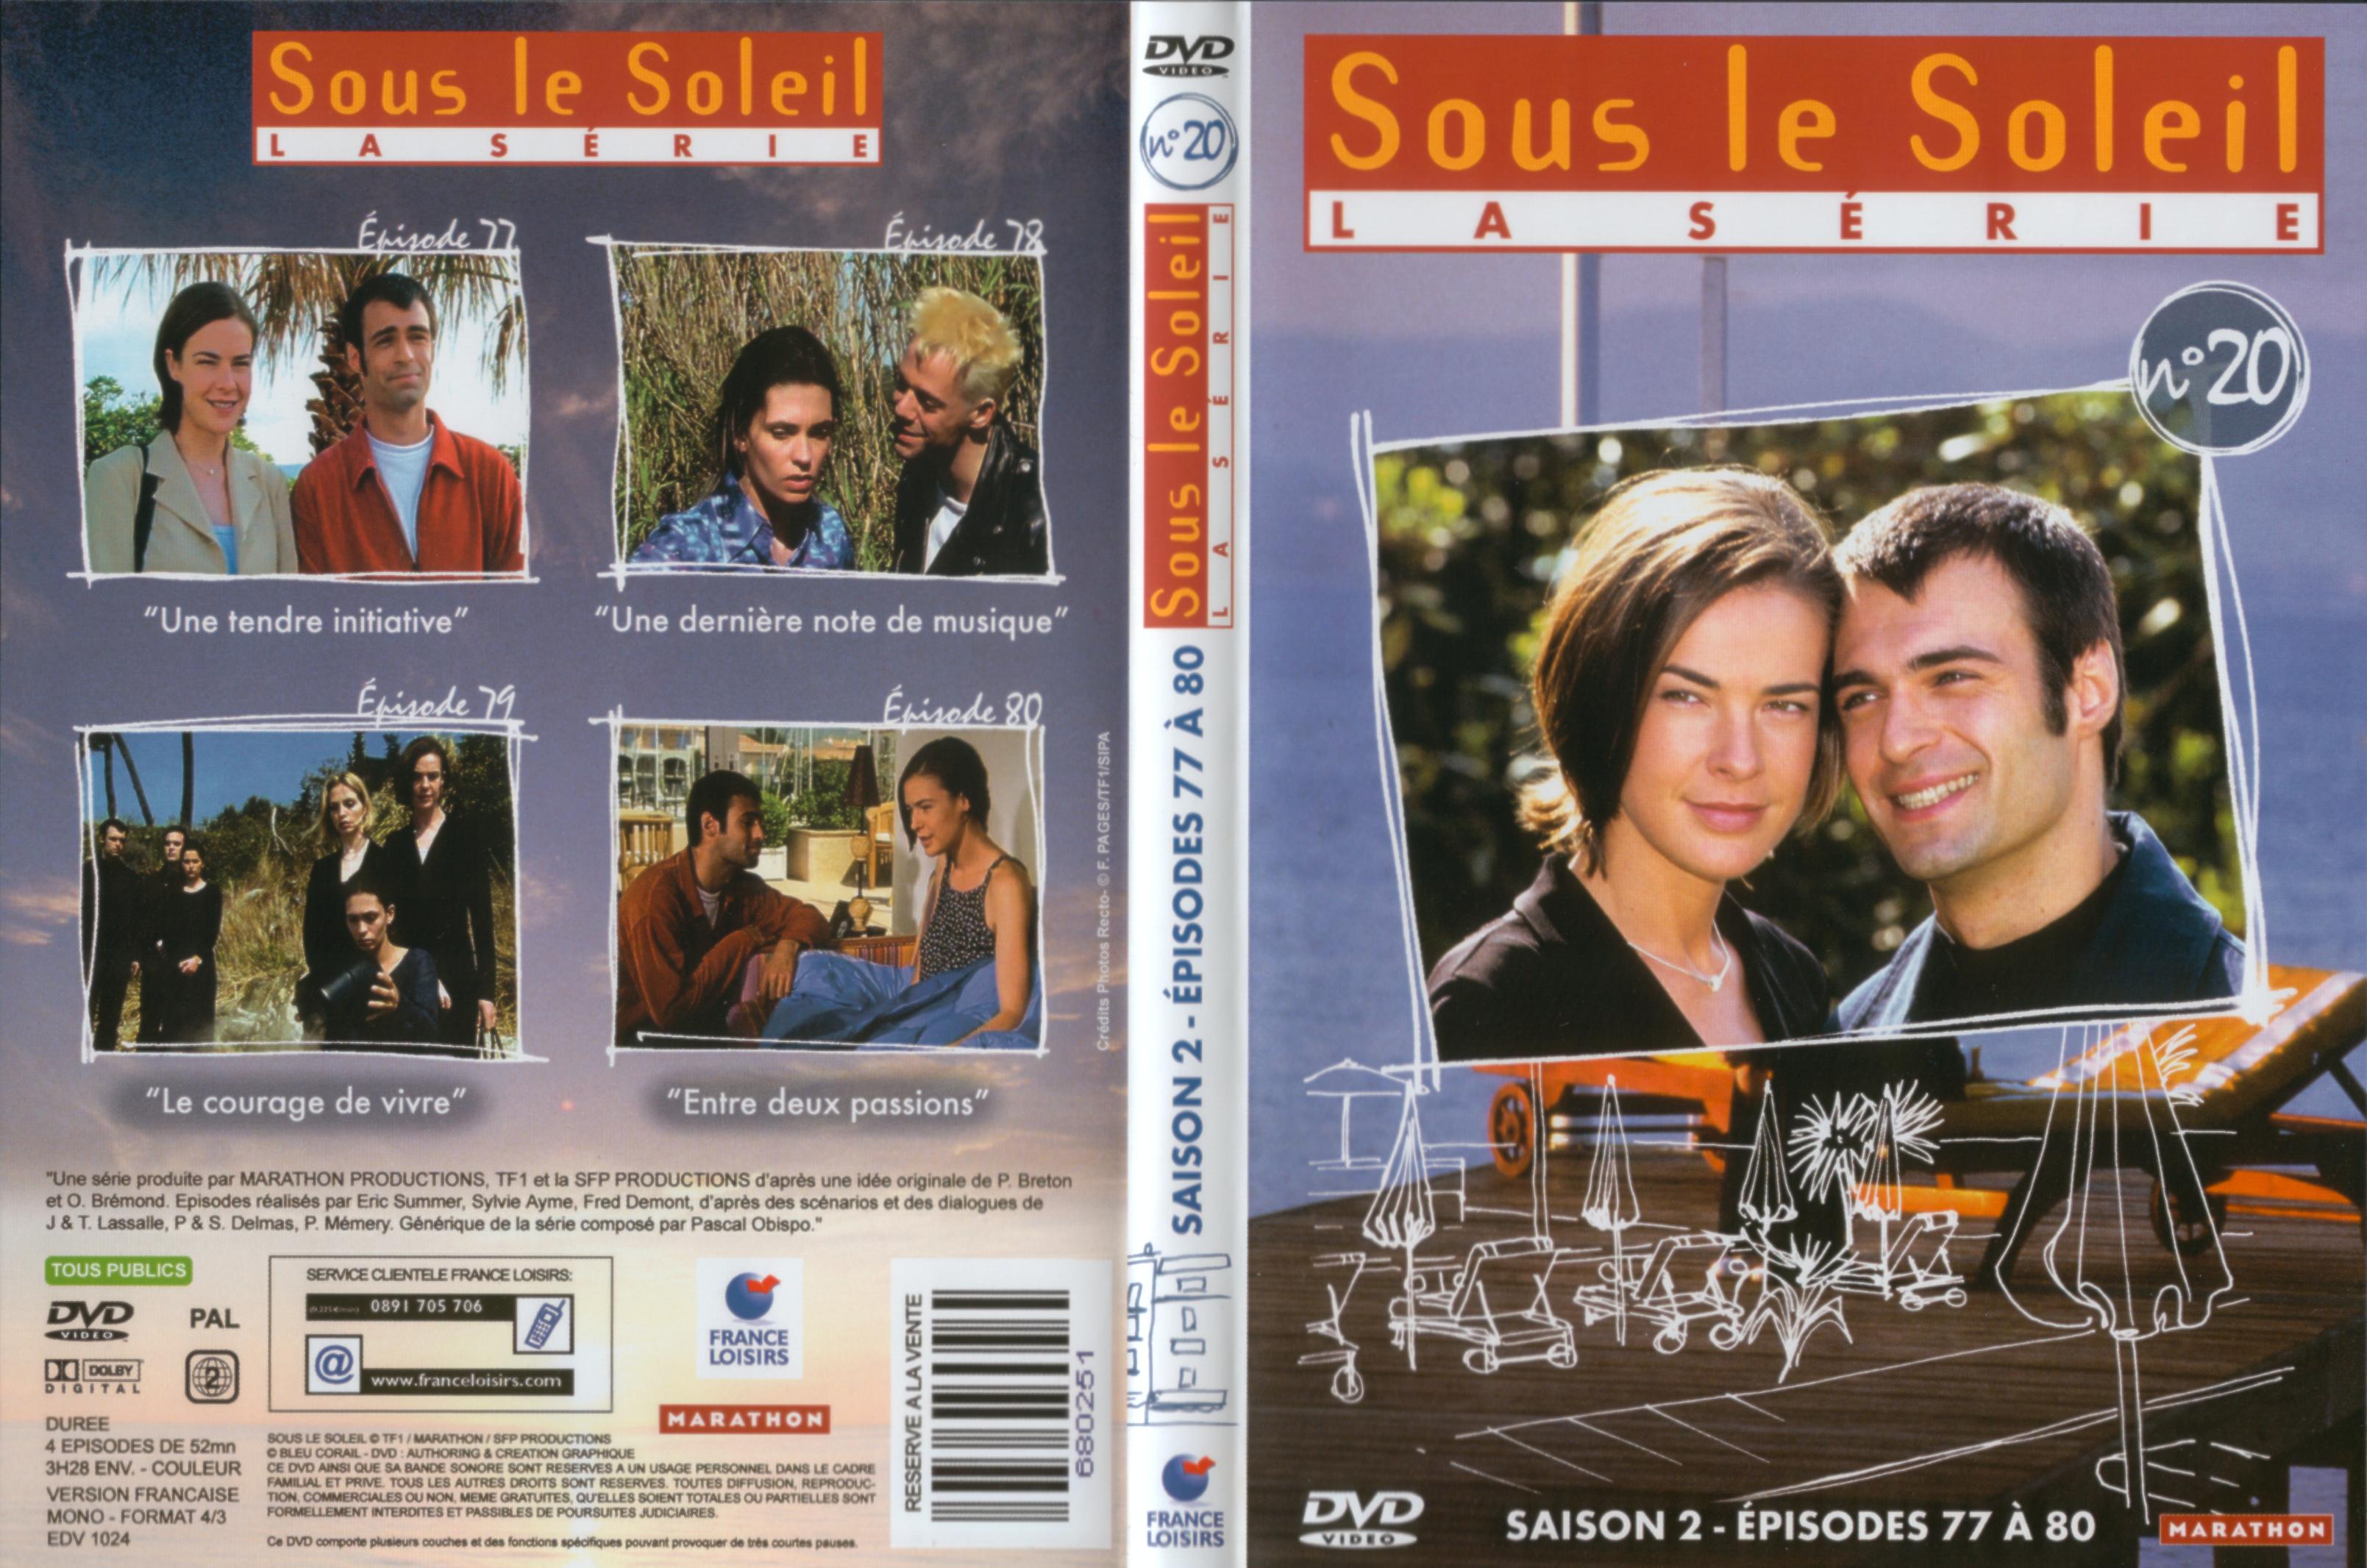 Jaquette DVD Sous le soleil saison 2 vol 20